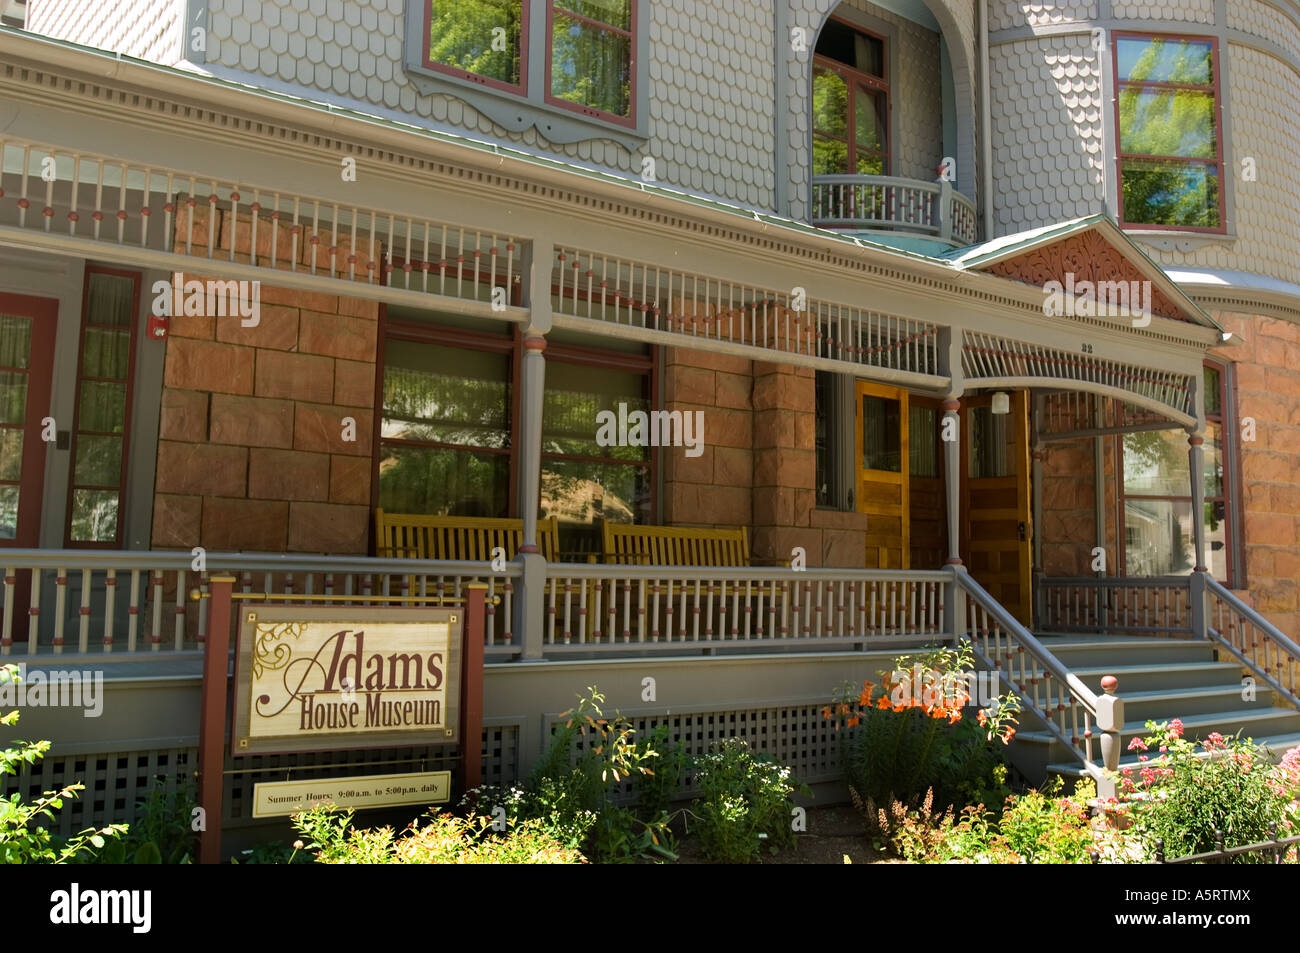 Adams House Museum hat Exponate auf Natur- und Erdgeschichte von Deadwood und der Black Hills Totholz SD Stockfoto